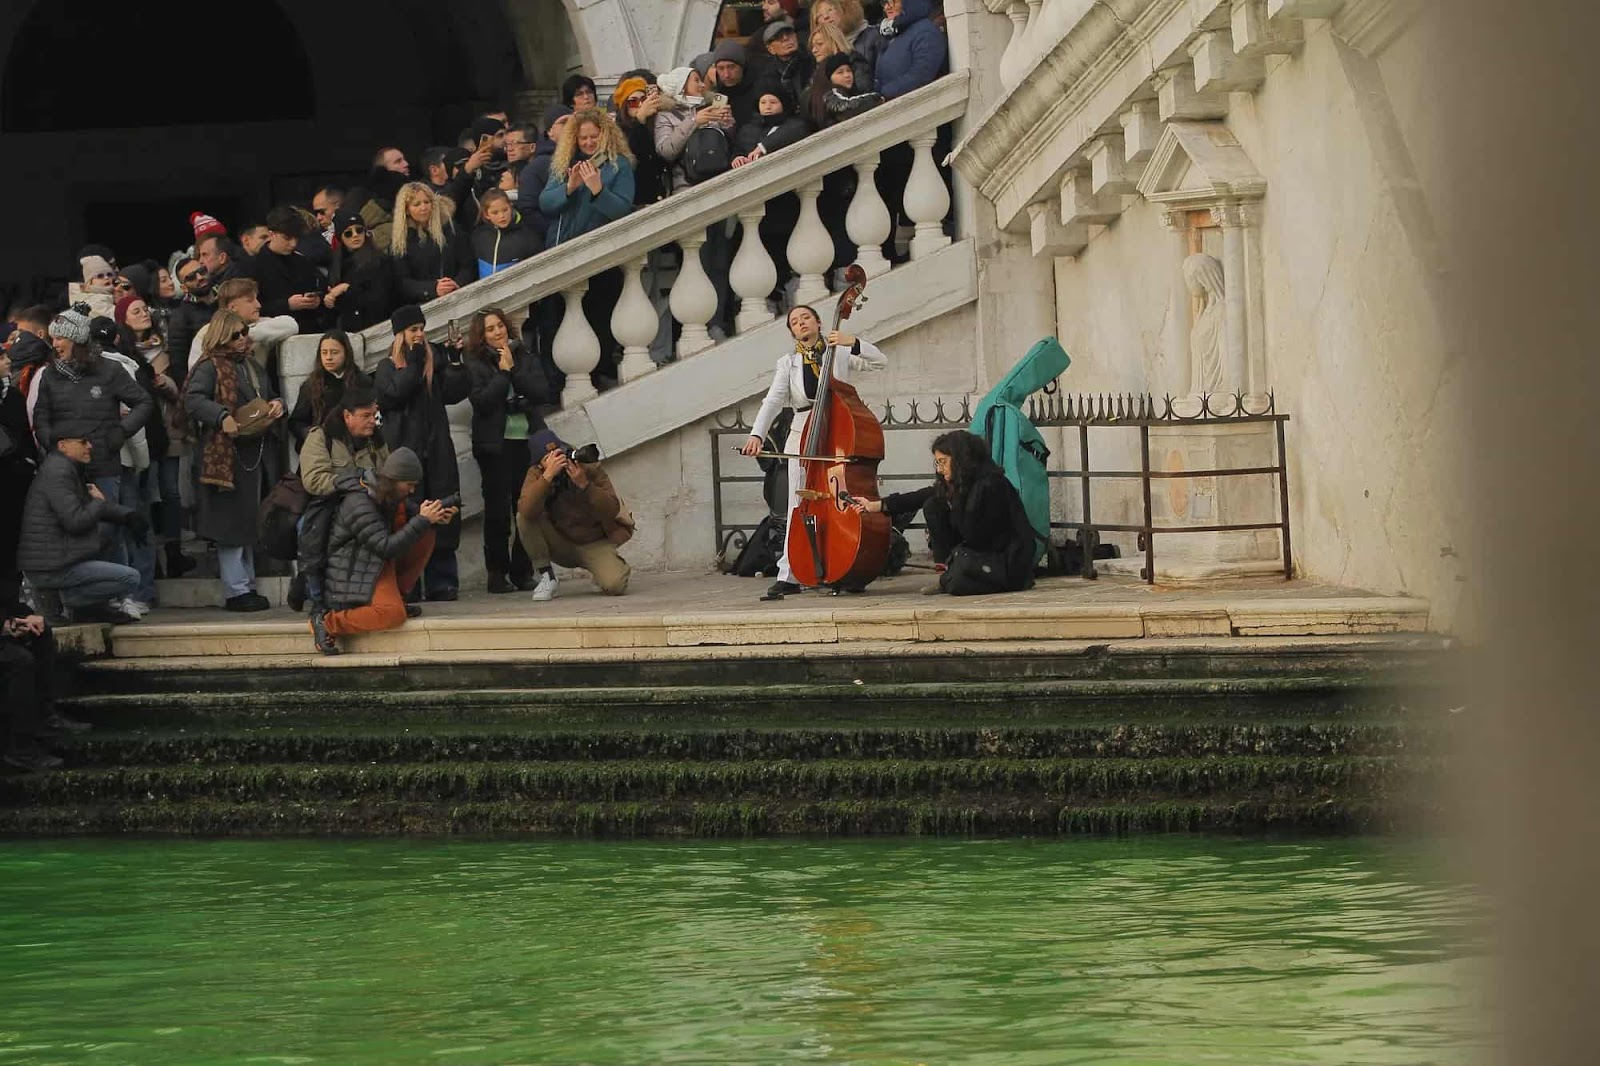 A rebel plays her double bass beside a Venetina canal bridge as a crowd listens